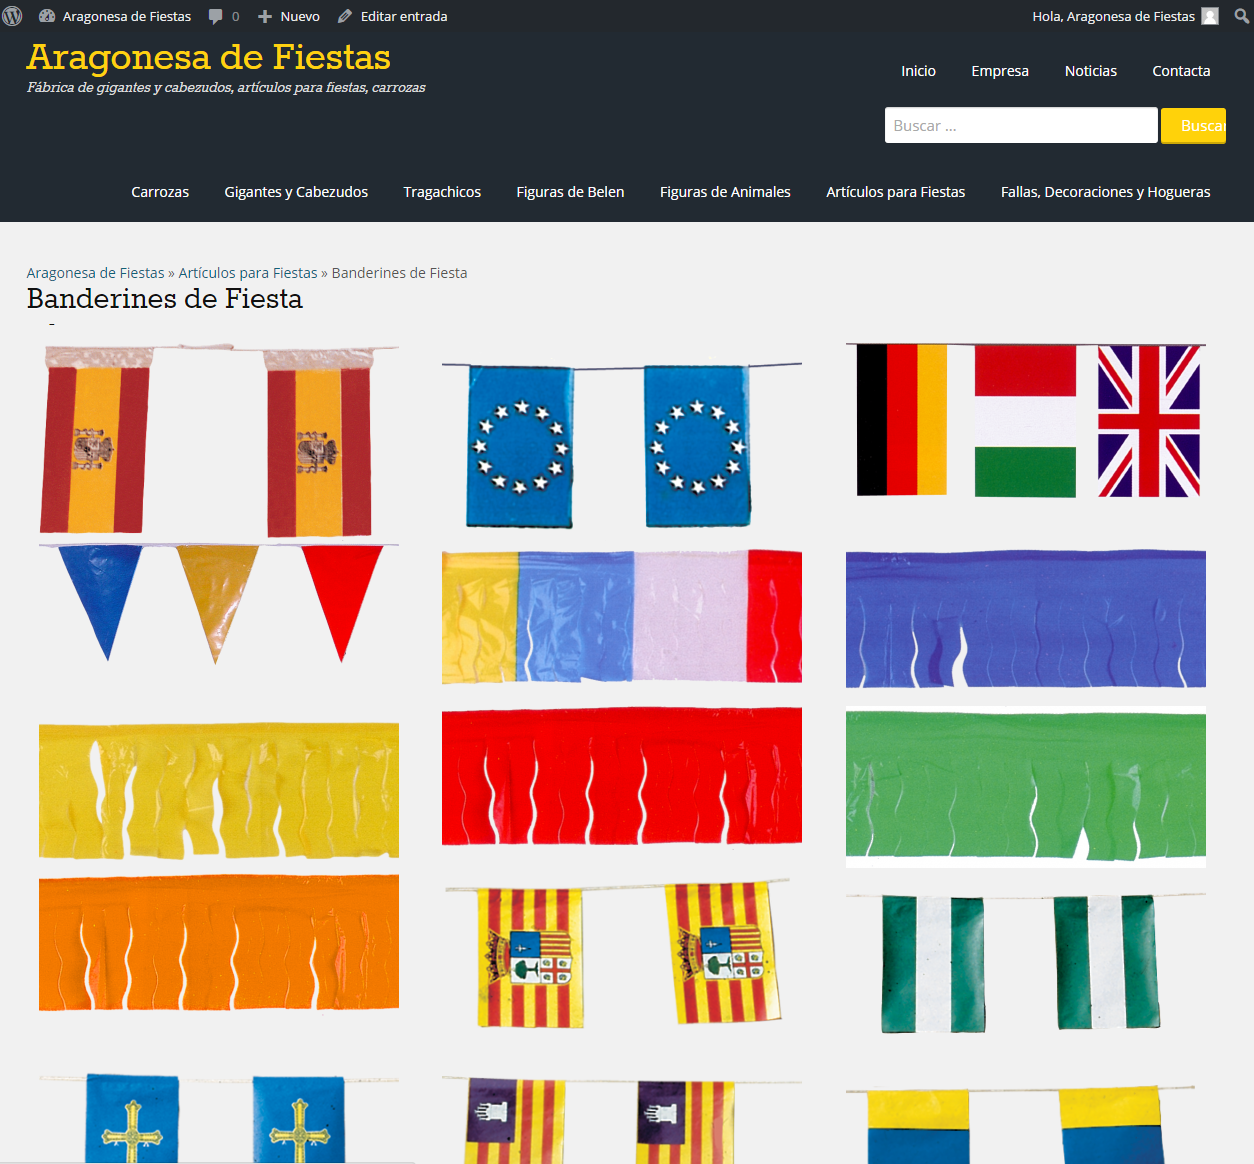 Comparar Excelente Borradura Banderas Paises papel | Aragonesa de Fiestas